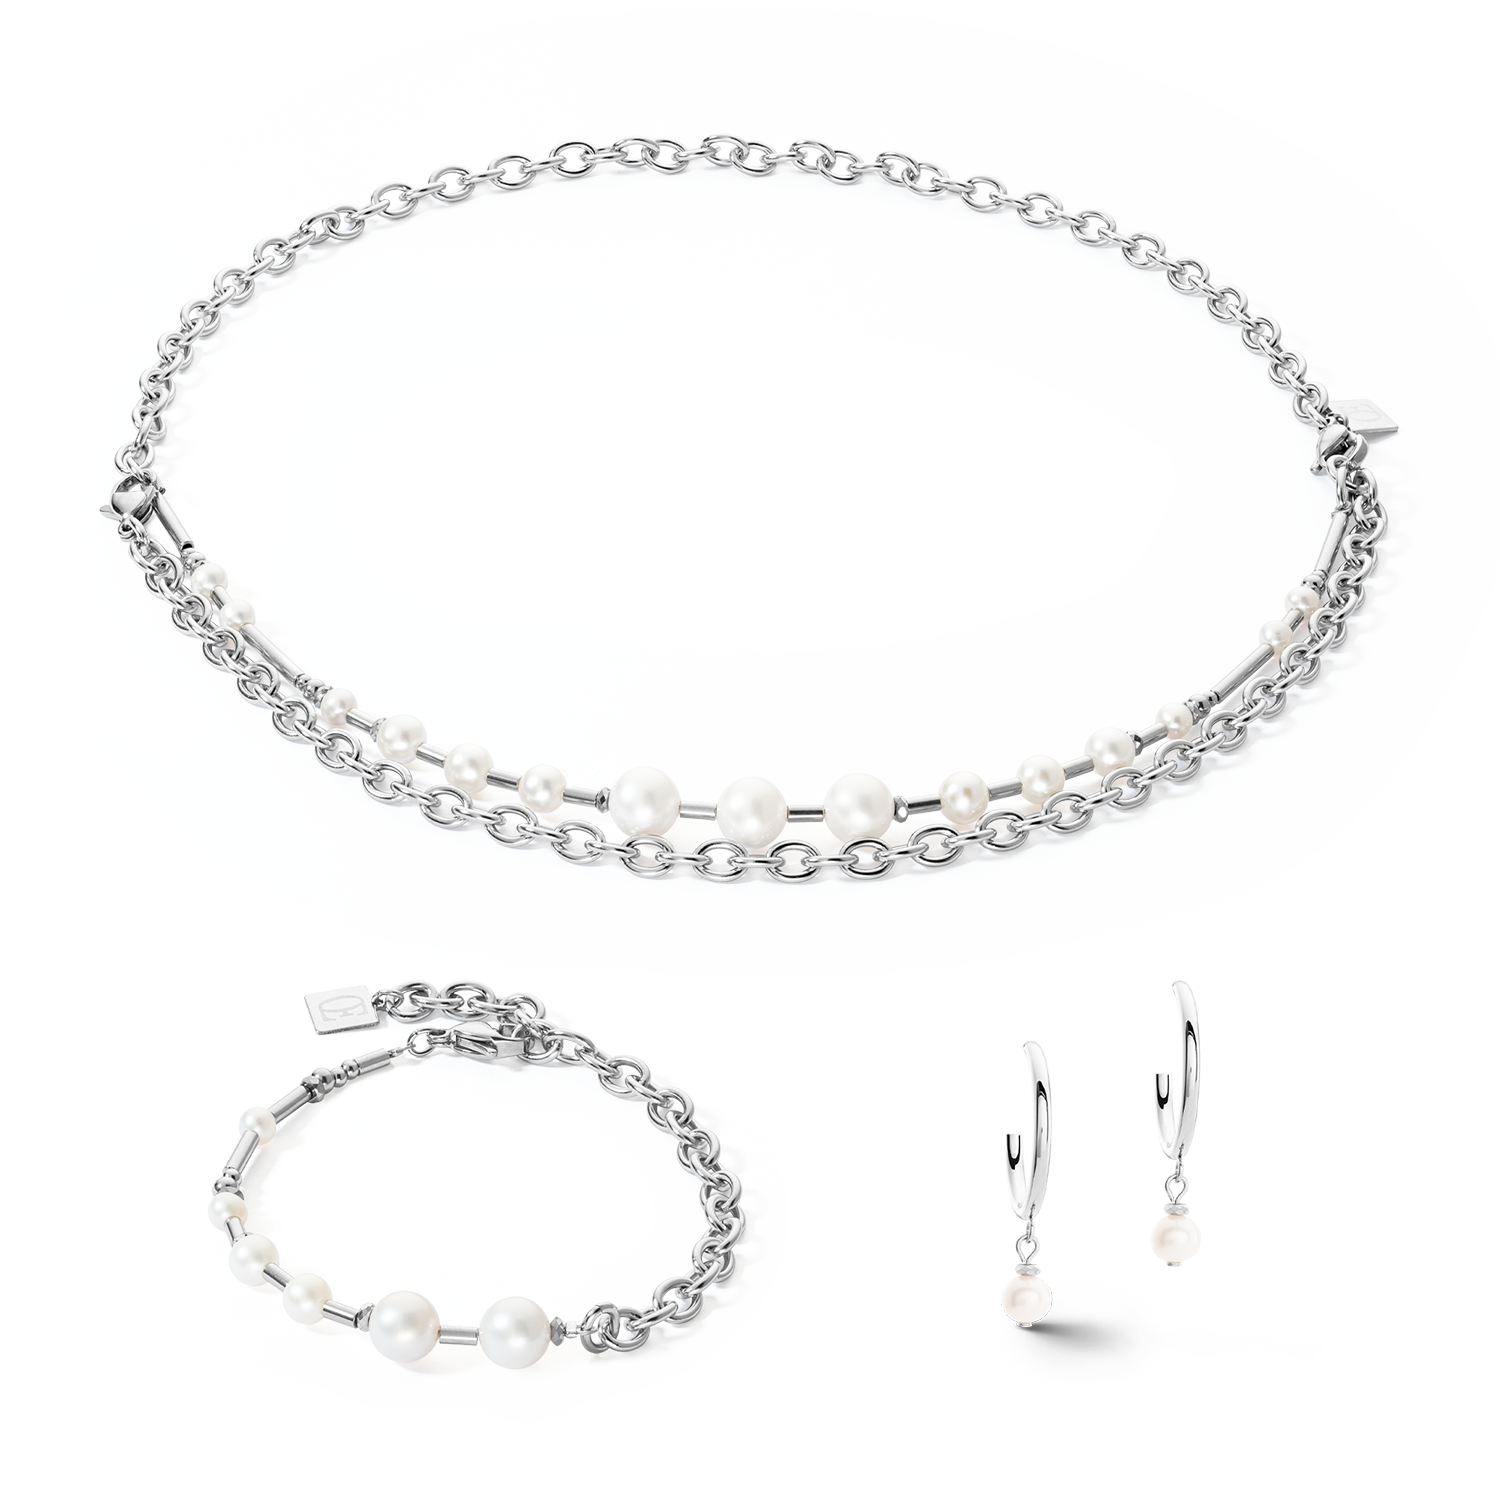 Bracelet Freshwater Pearls & chain Multiwear silver